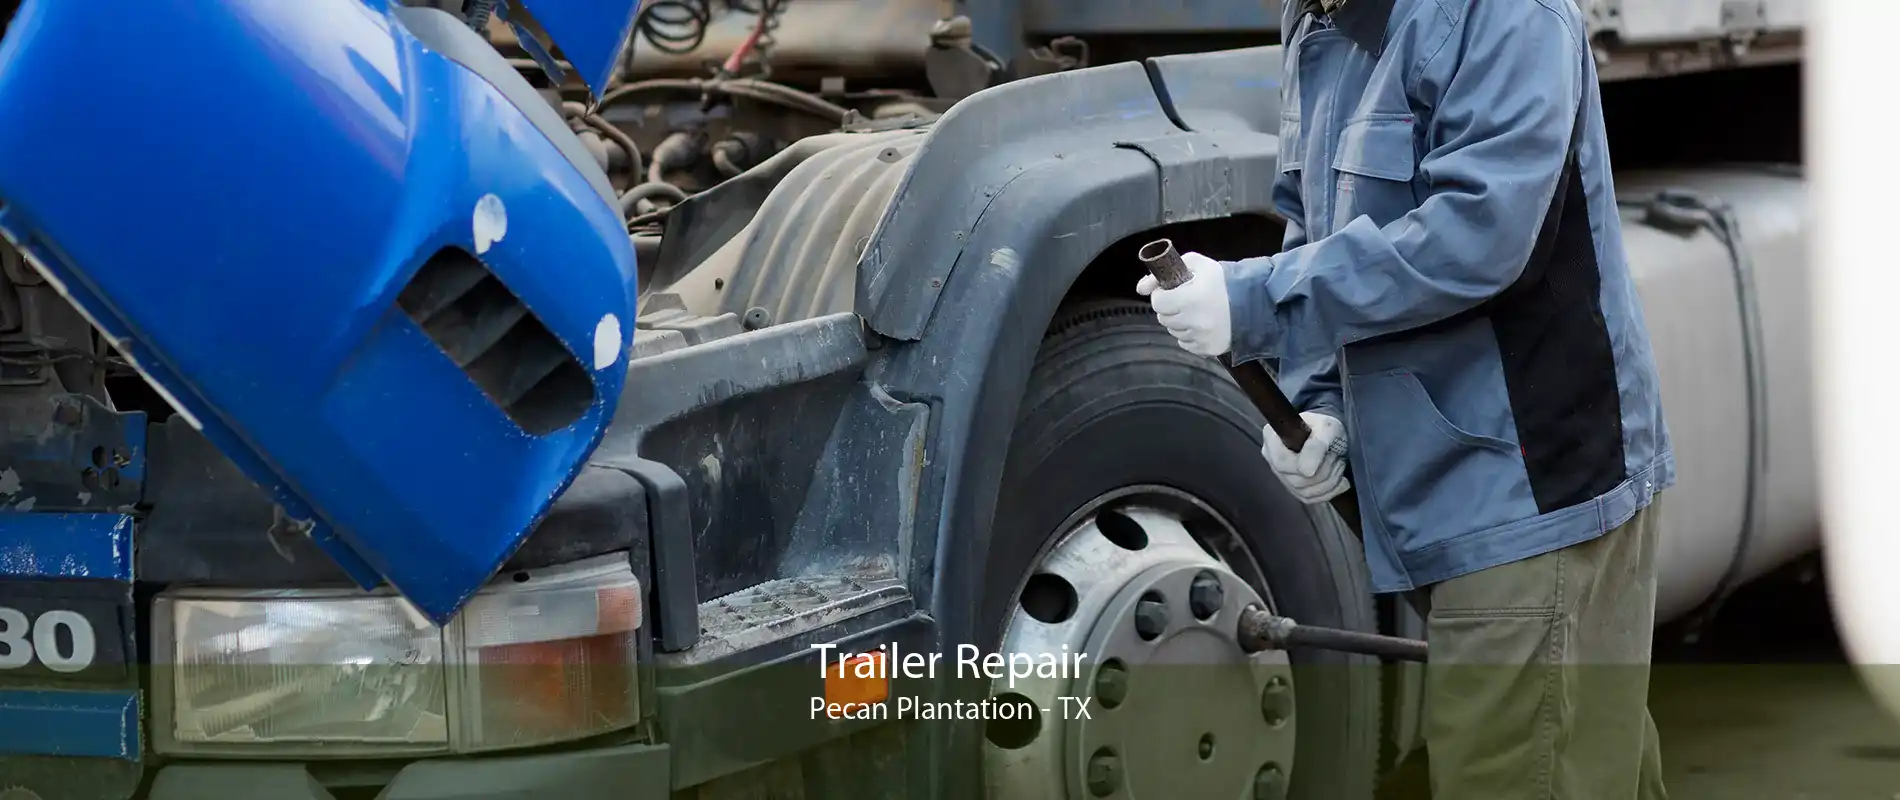 Trailer Repair Pecan Plantation - TX